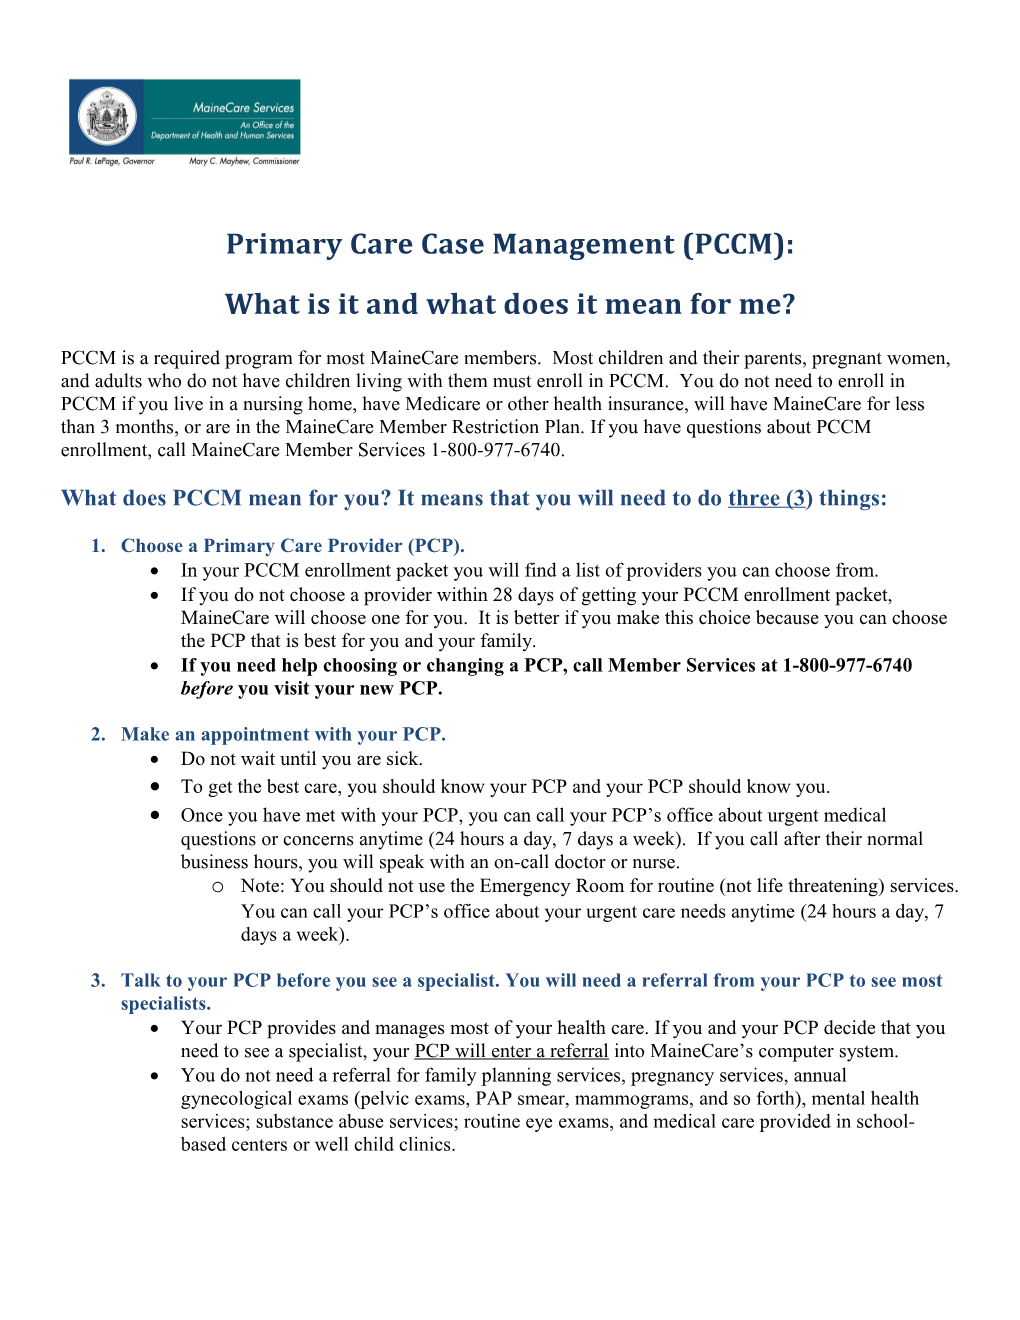 Primary Care Case Management (PCCM)